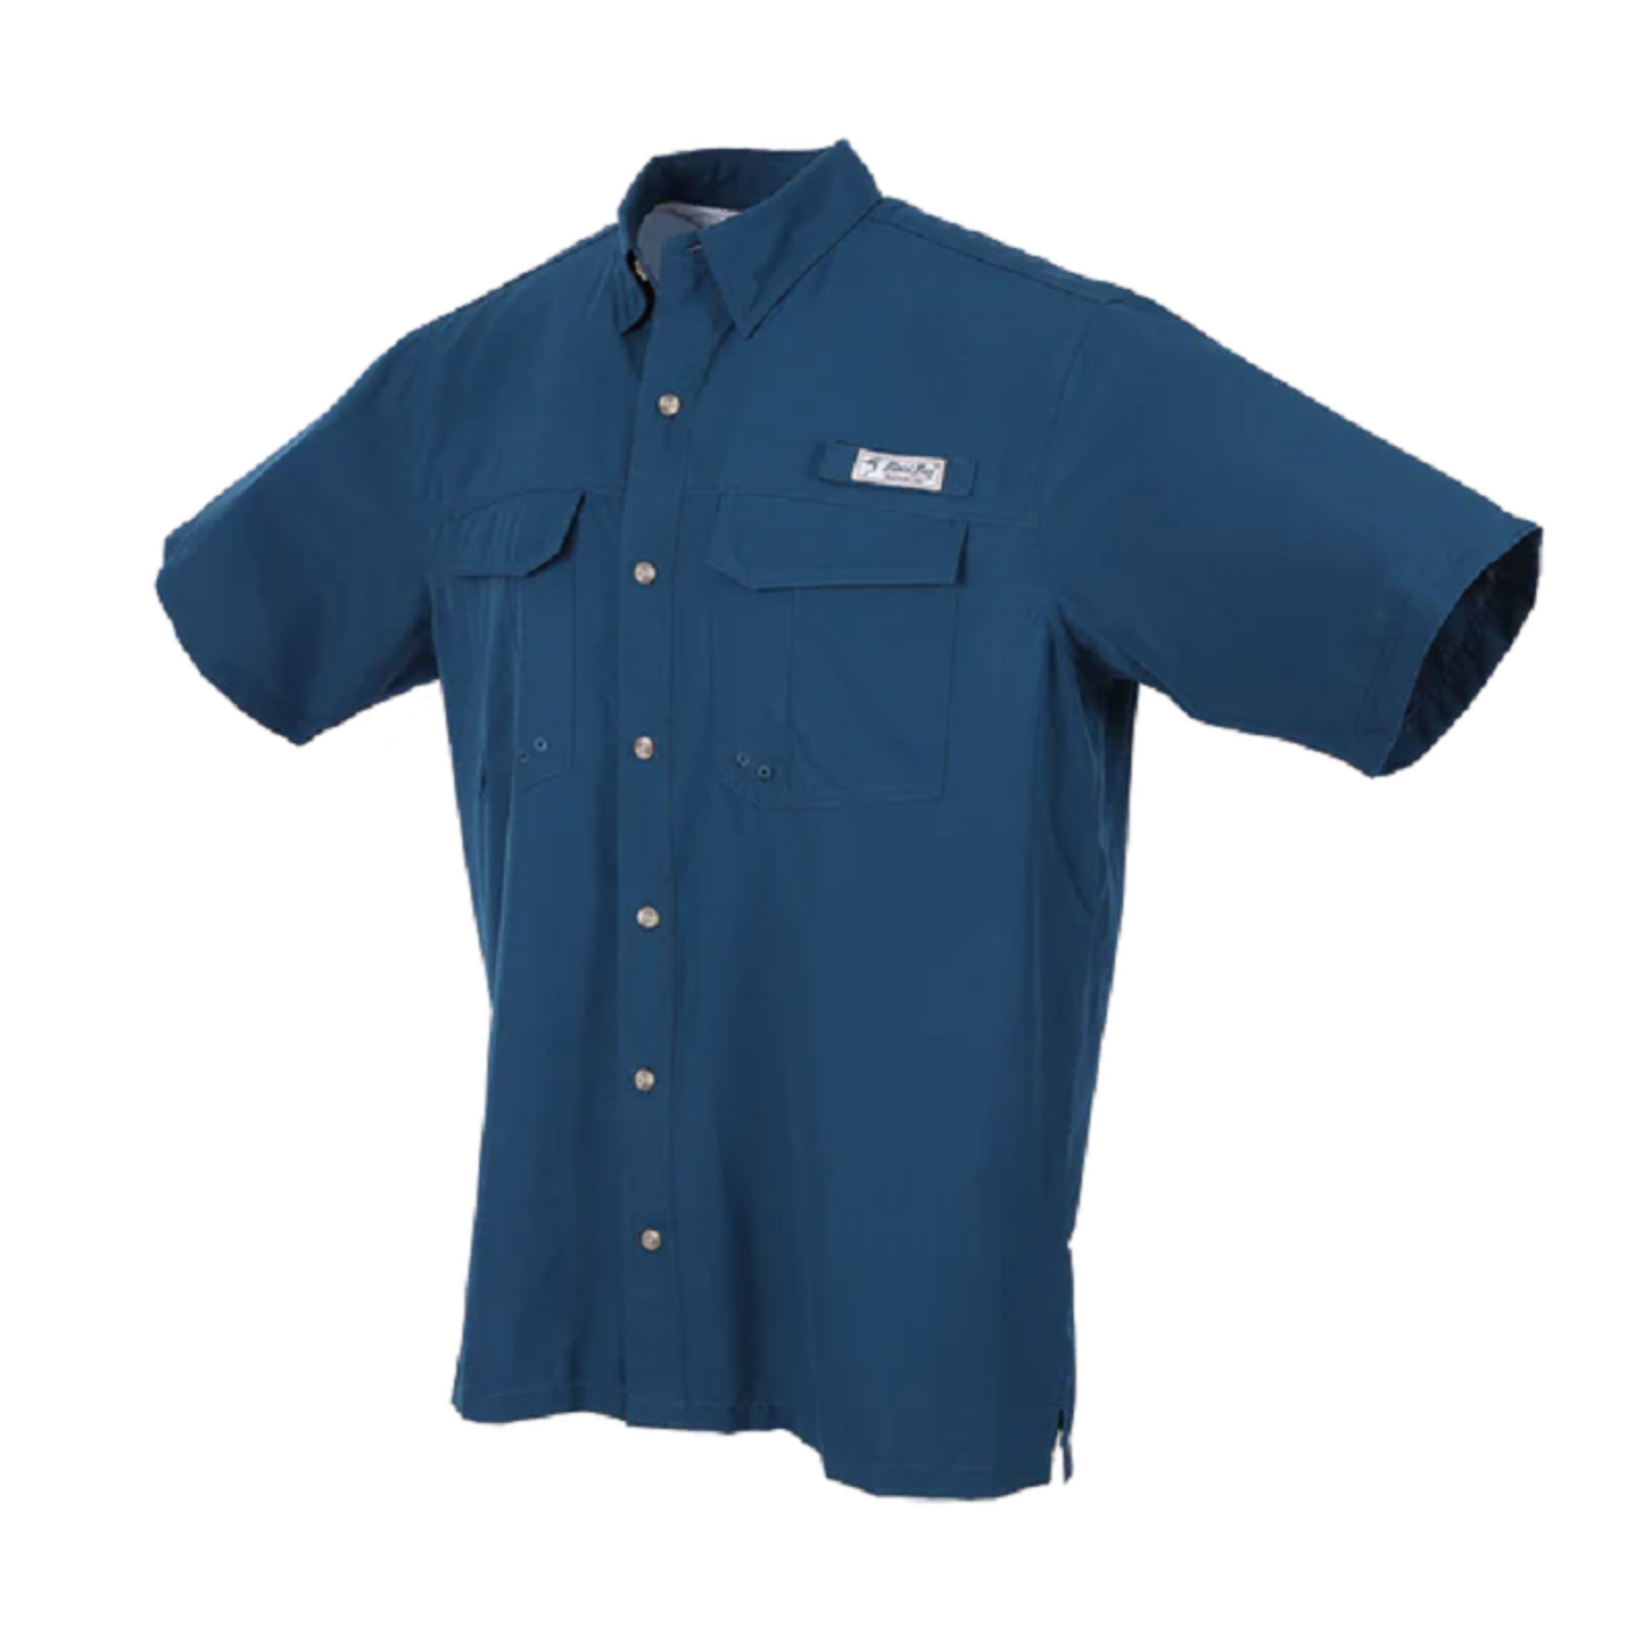 Bimini Bay Outfitters Bimini Flats V Men's Short Sleeve Shirt